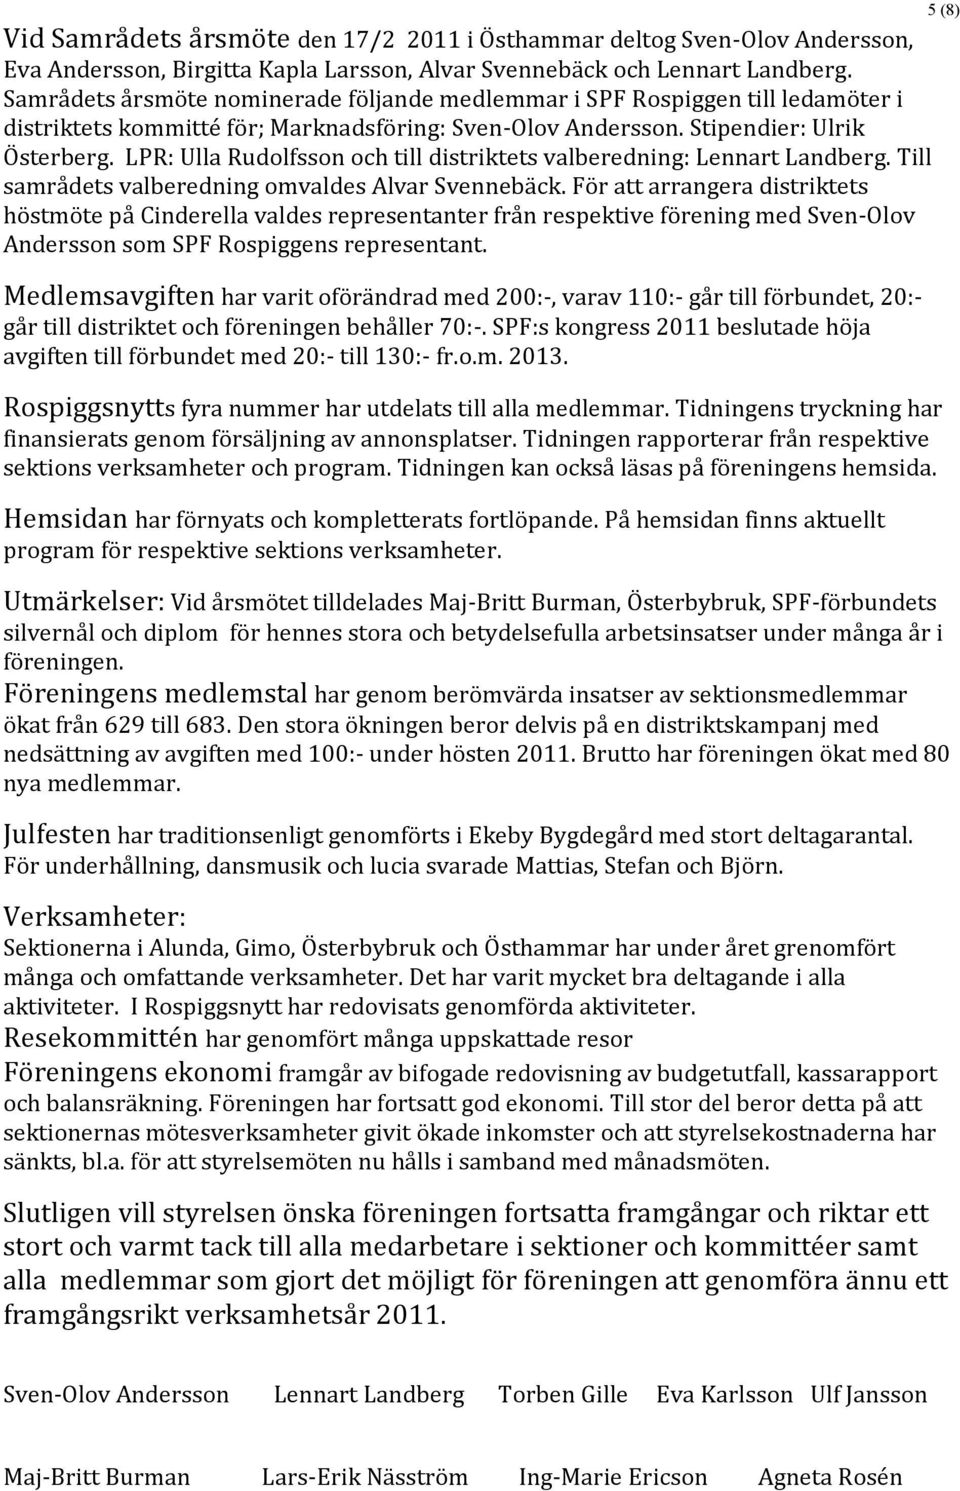 LPR: Ulla Rudolfsson och till distriktets valberedning: Lennart Landberg. Till samrådets valberedning omvaldes Alvar Svennebäck.